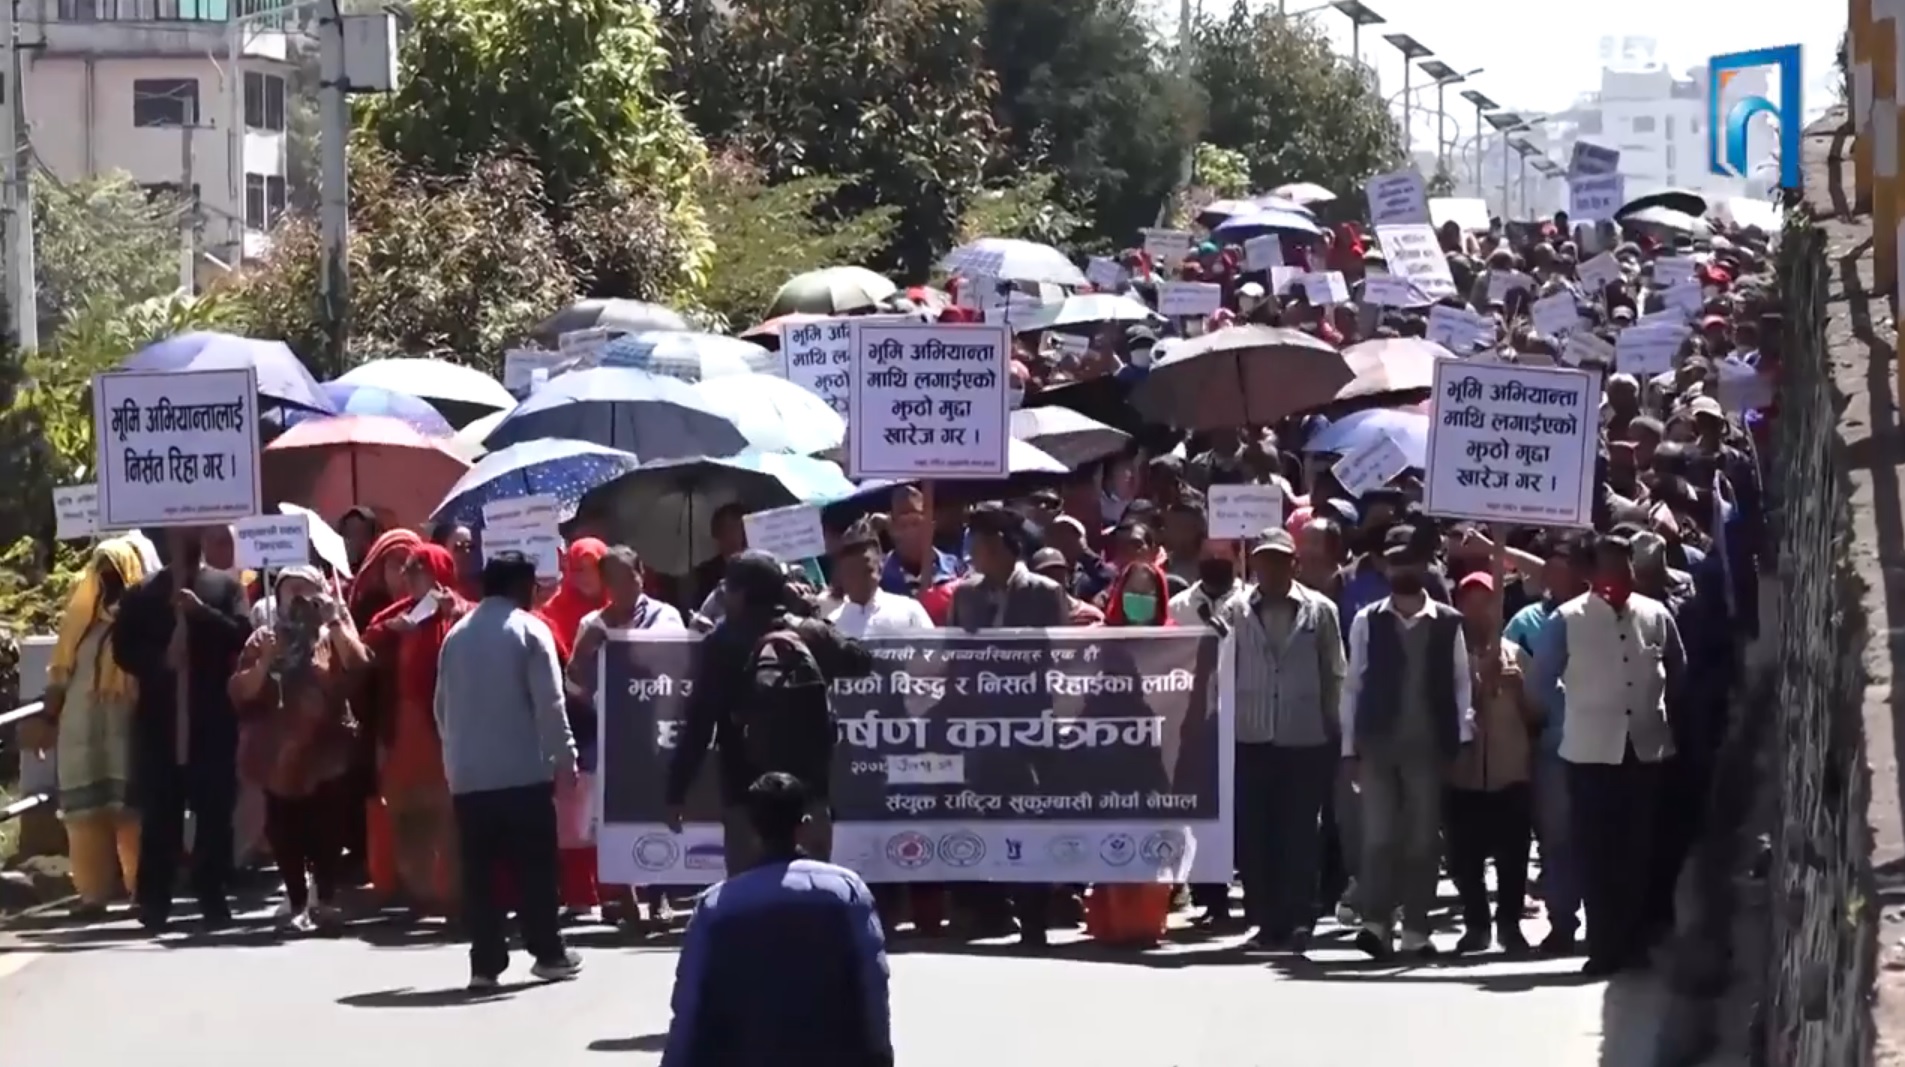 काठमाडौं महानगर प्रमुख बालेनविरुद्ध प्रदर्शन (भिडियो रिपोर्टसहित)